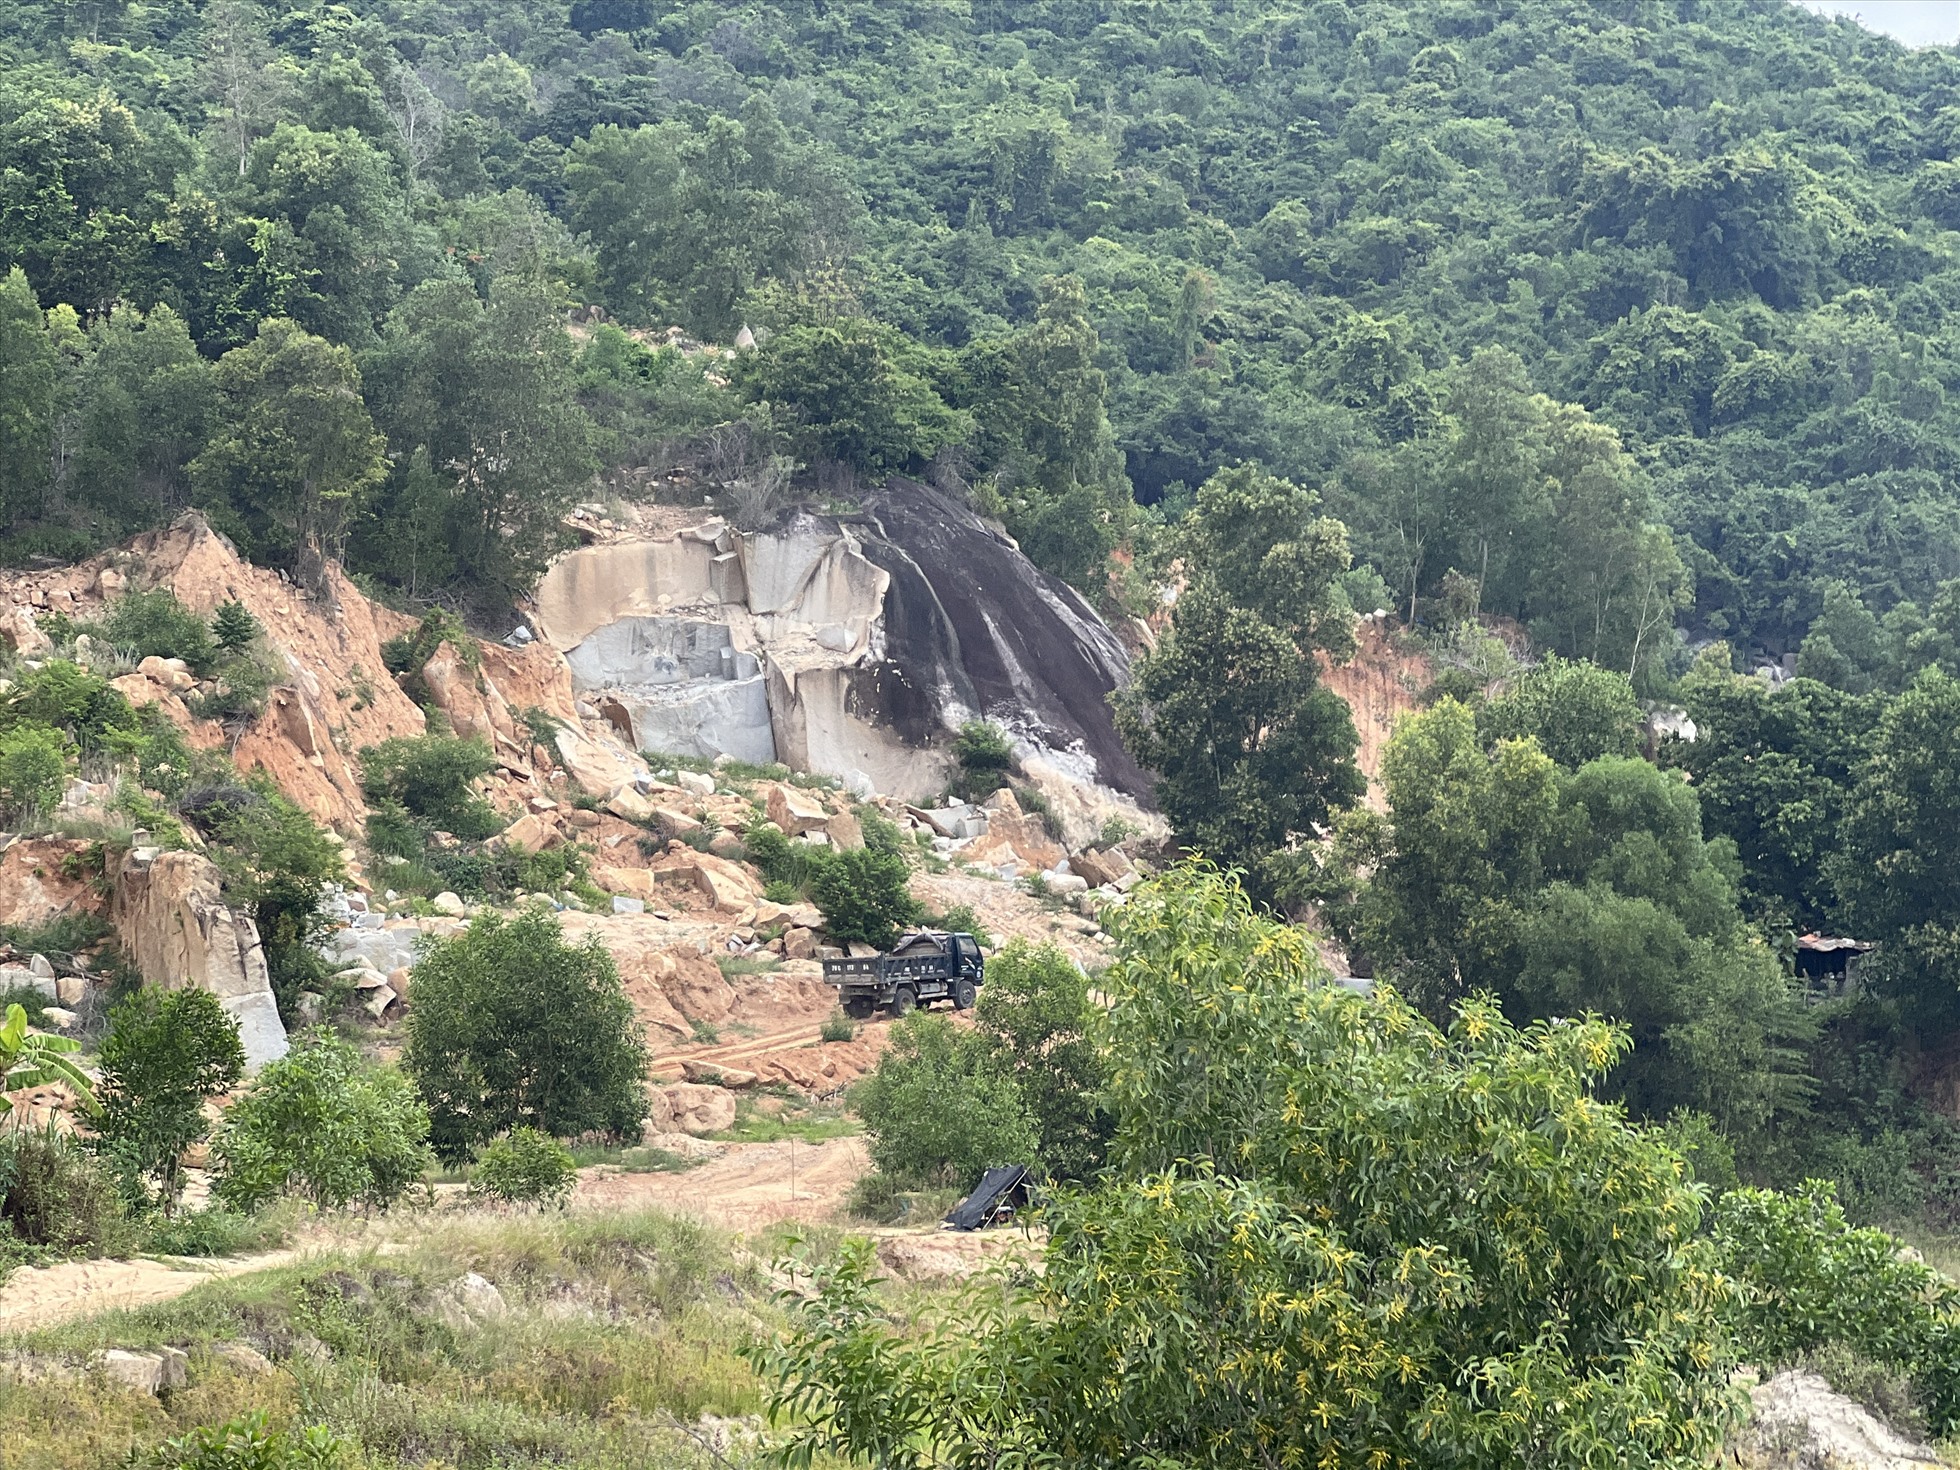 Đồi núi bị xẻ để mở đường cho xe chở đất đá vào mỏ khai thác.